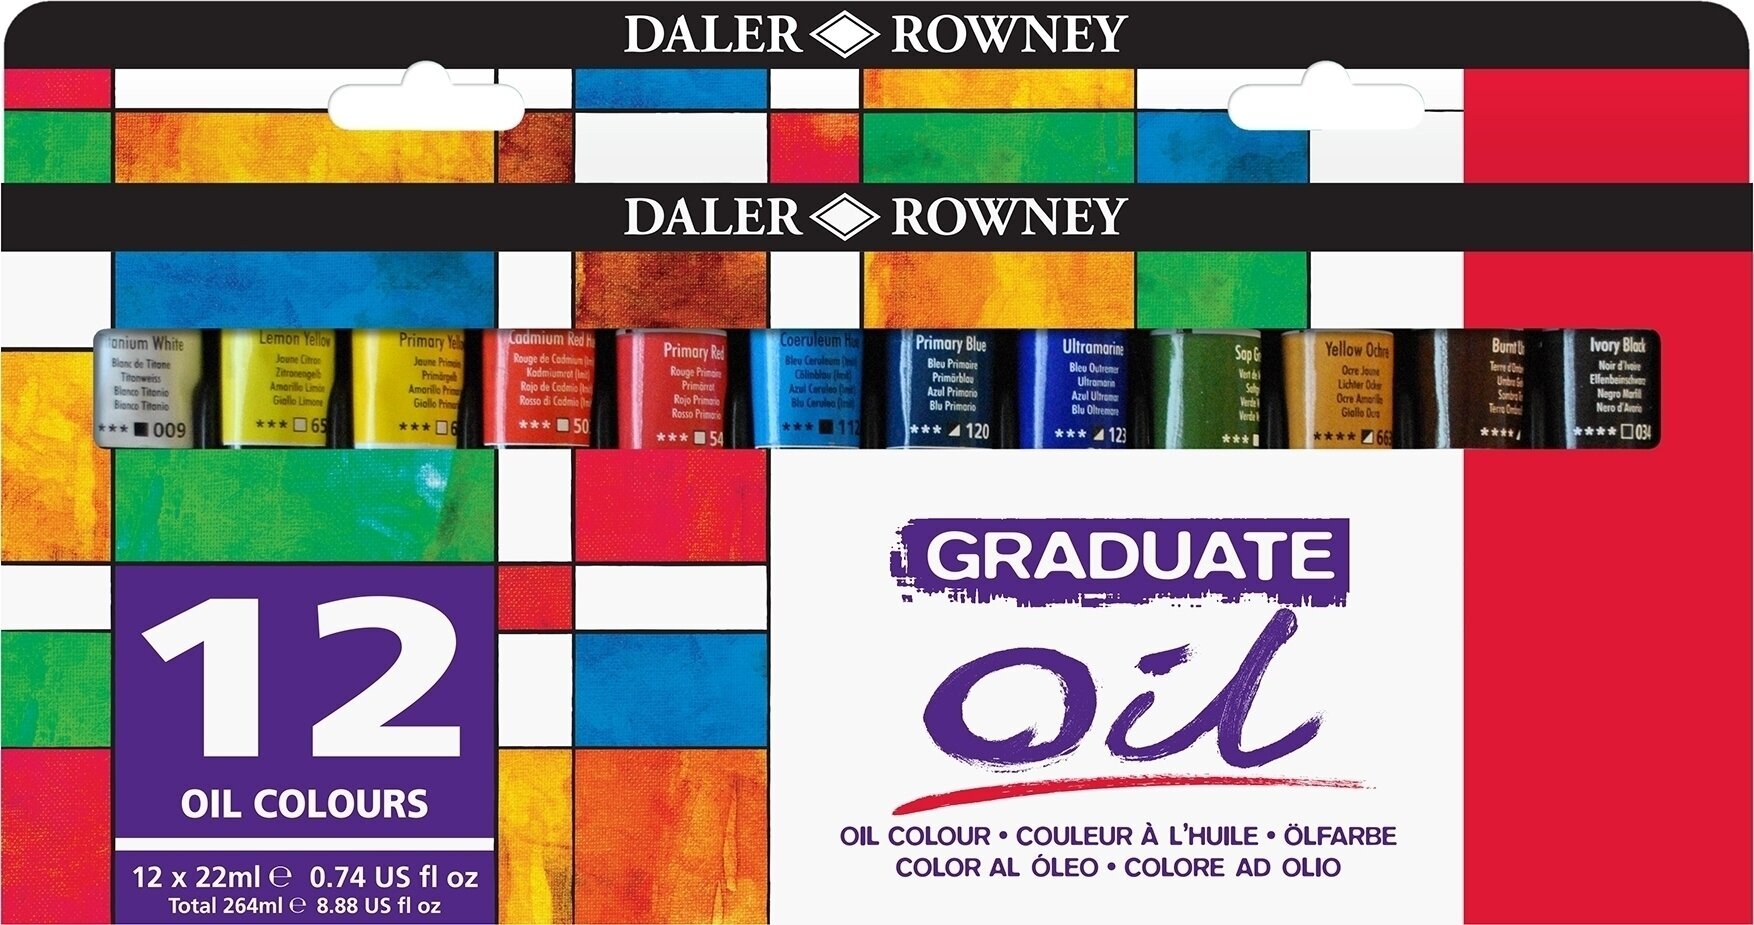 Oil colour Daler Rowney Graduate Set of Oil Paints 12 x 22 ml